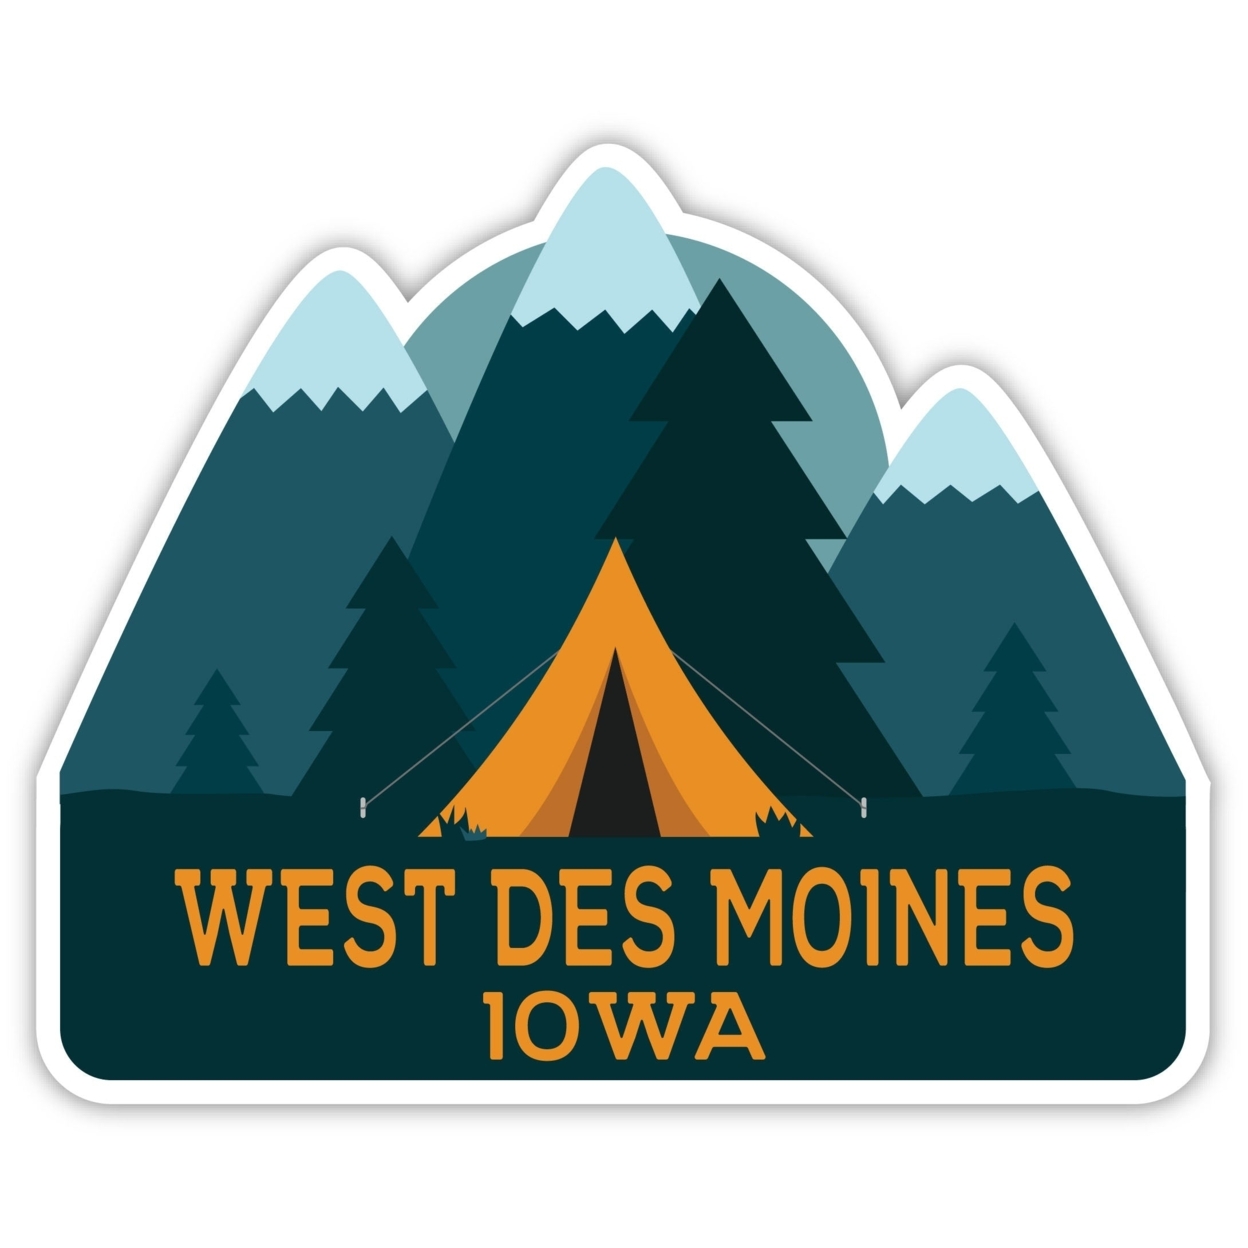 West Des Moines Iowa Souvenir Decorative Stickers (Choose Theme And Size) - Single Unit, 2-Inch, Camp Life